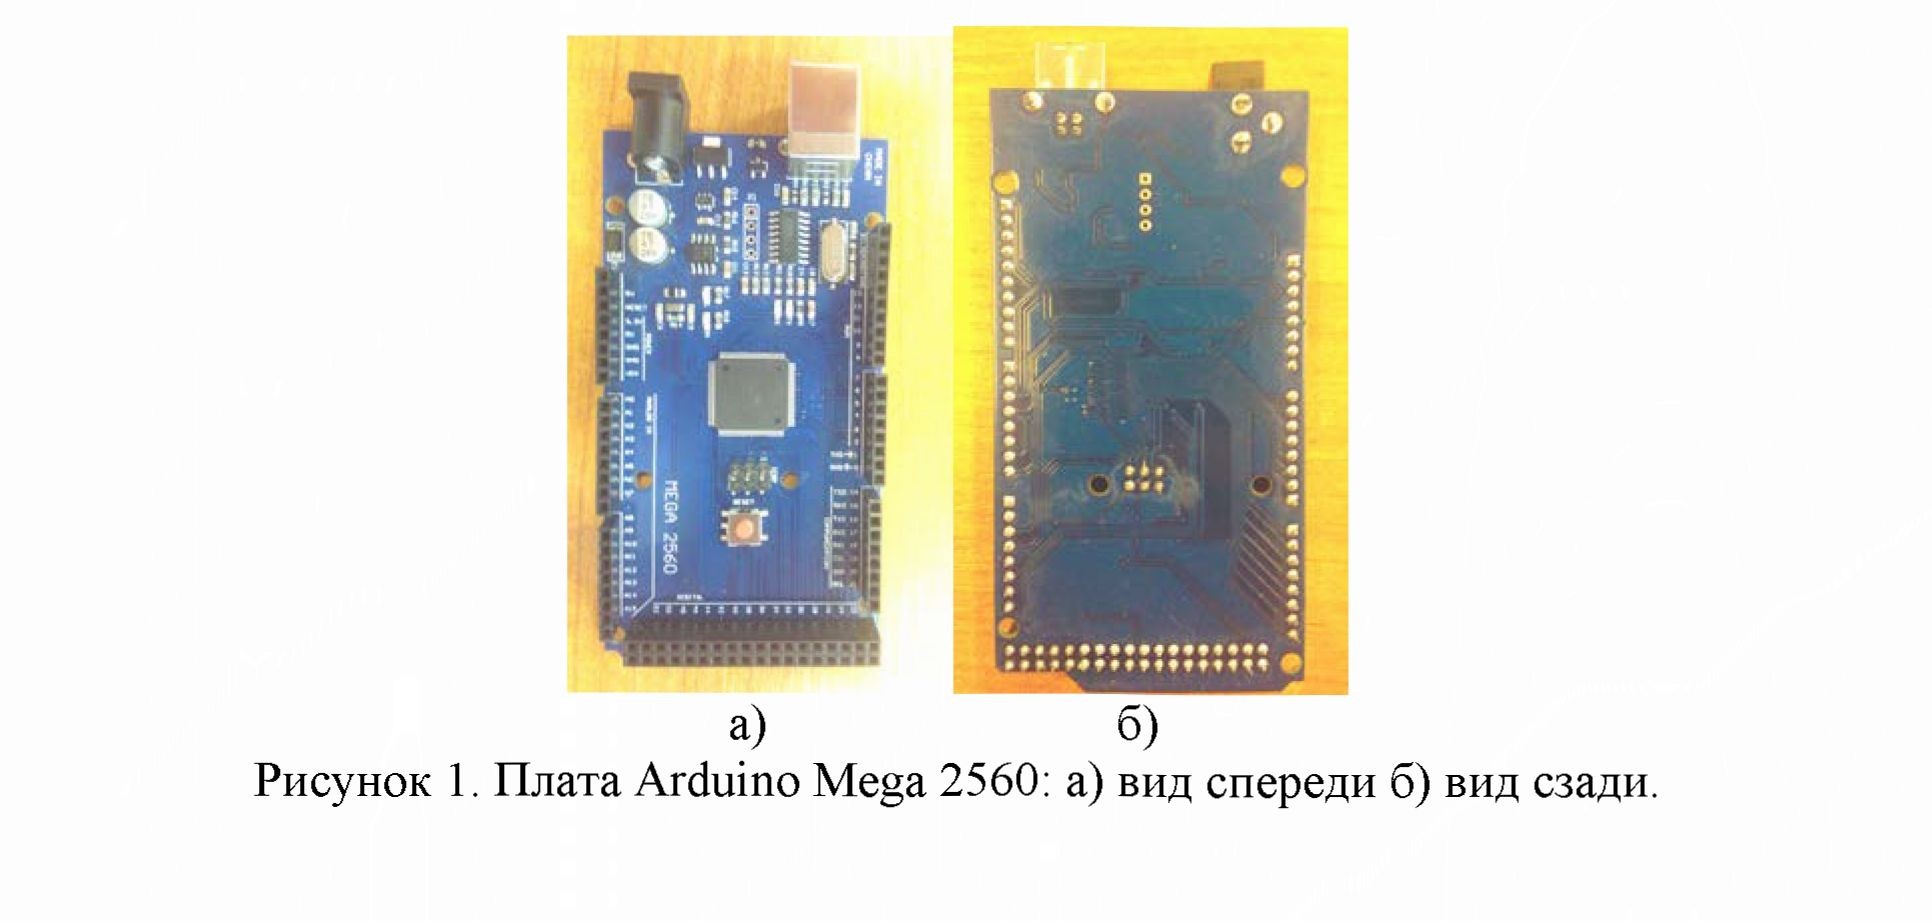 Коммуникация отладочной платы arduino mega 2560 c программным обеспечением matlab